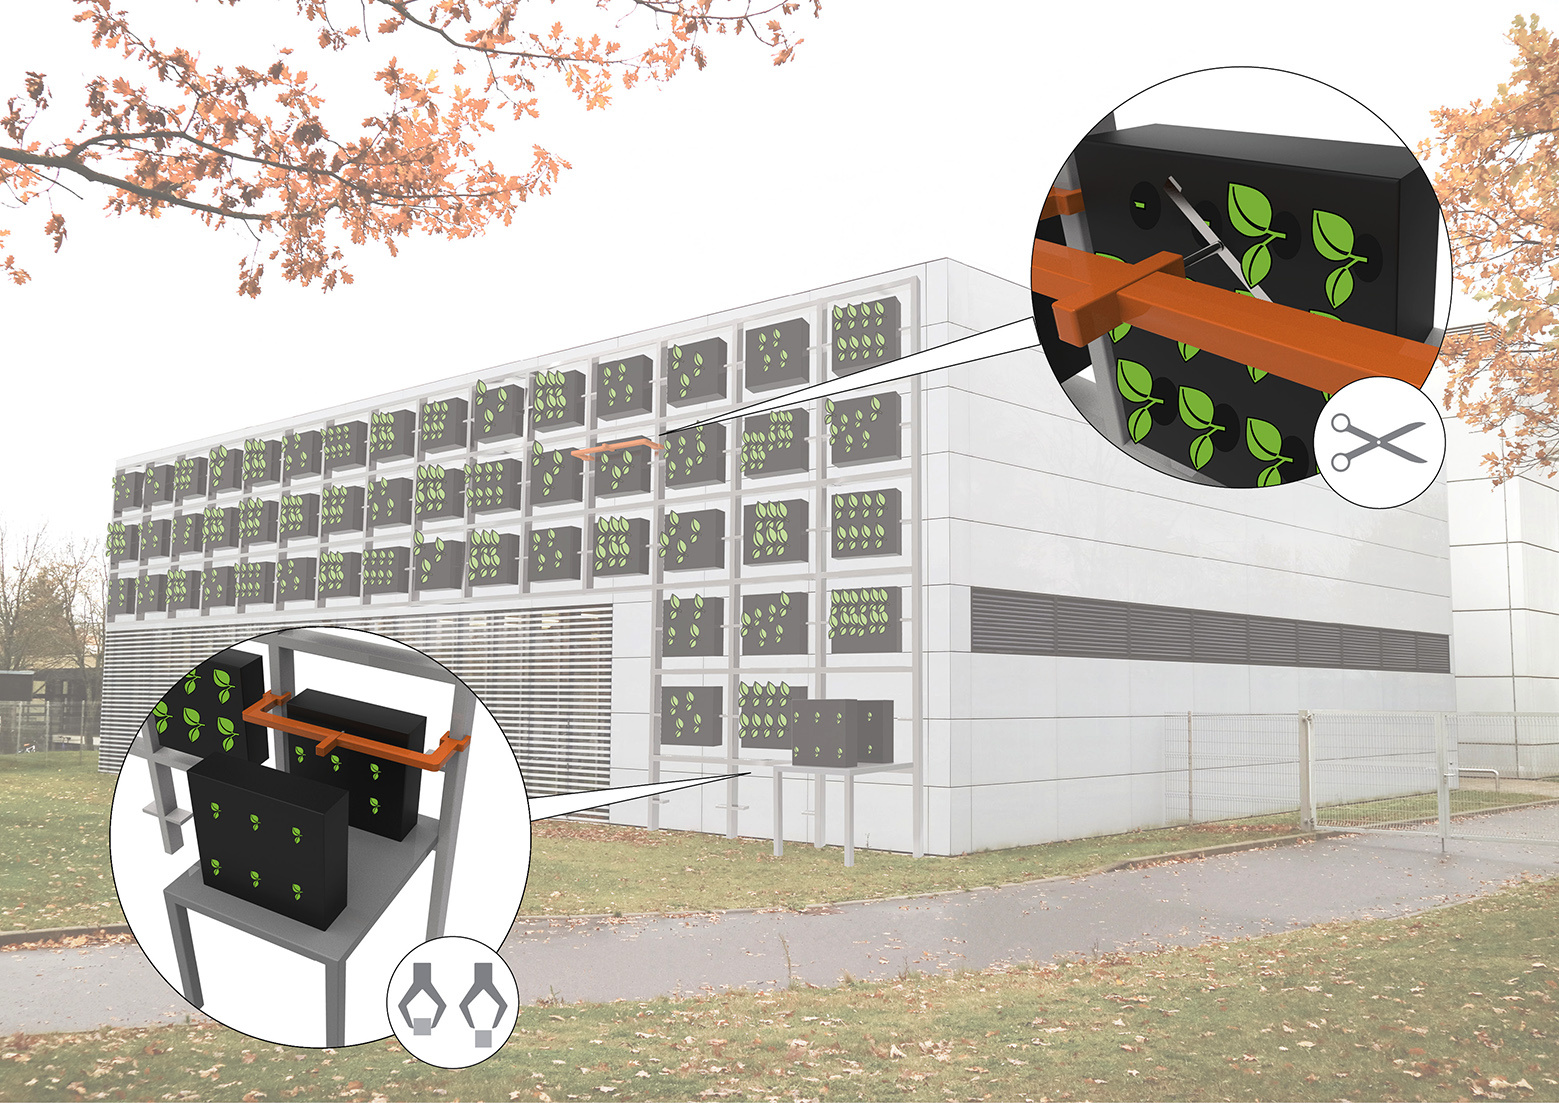 Das modulare Konzept der automatisierten Fassadenbegrünung, bestehend aus Modulen und Pflanzen-Submodulen, ermöglicht es dem Green Wall Robot, sämtliche Arbeiten zu übernehmen, beispielsweise Pick&Place-Aufgaben oder den gezielten Pflanzenschnitt. (Bild: Fraunhofer-Institut f. Arbeitswirtschaft)